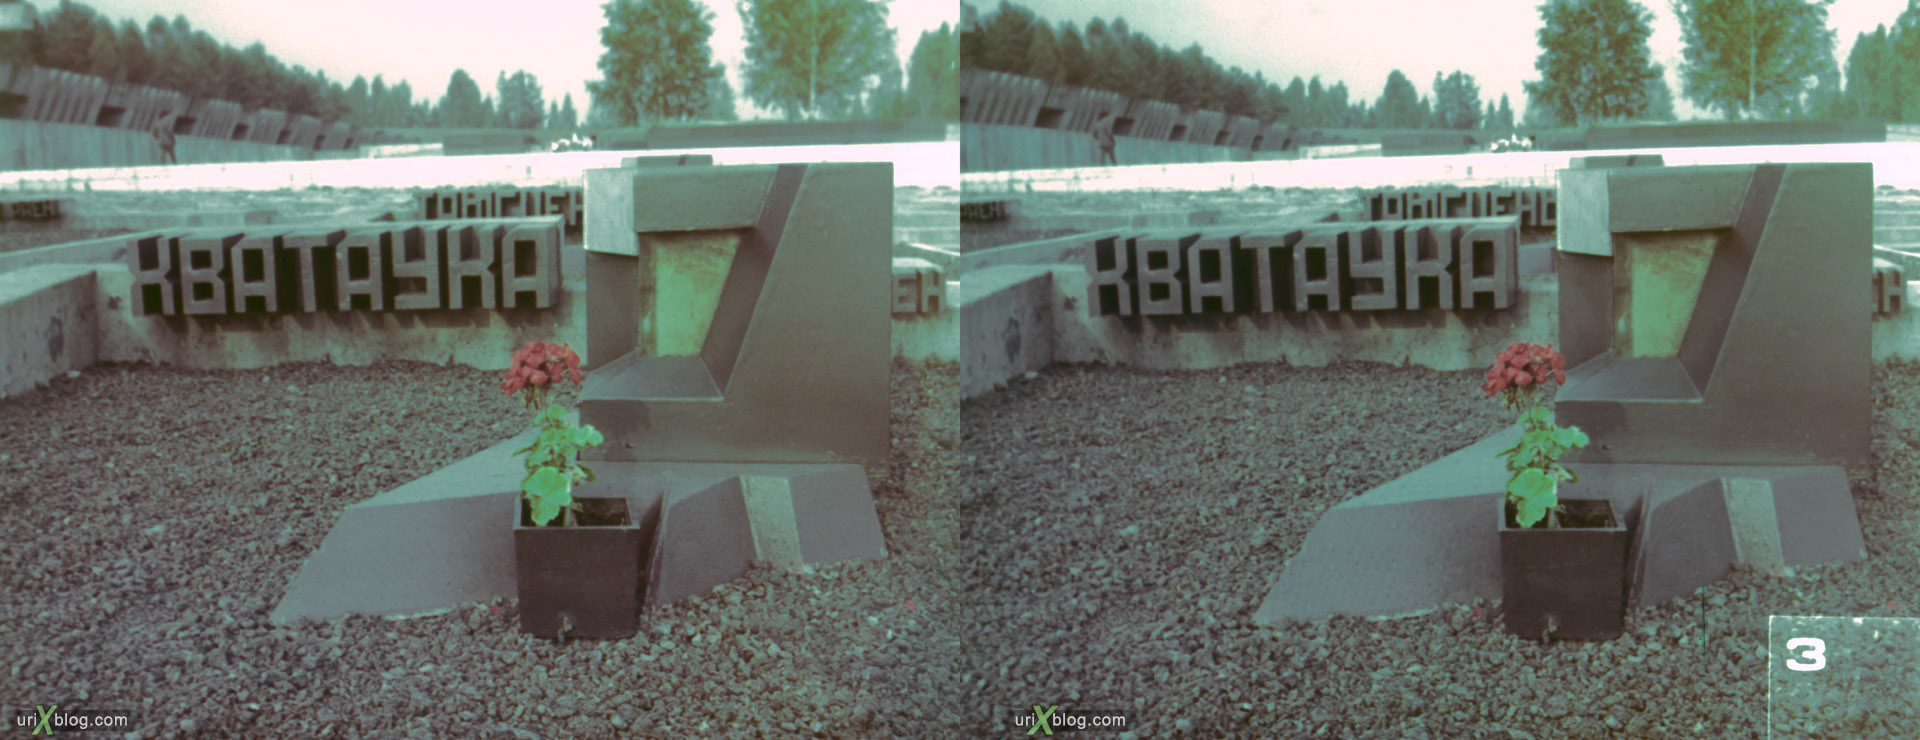 1978, Мемориальный комплекс Хатынь, Белоруссия, Беларусь, Минск, 3D, перекрёстная стереопара, стерео, стереопара, стереослайд, слайд, фотоплёнка, плёнка